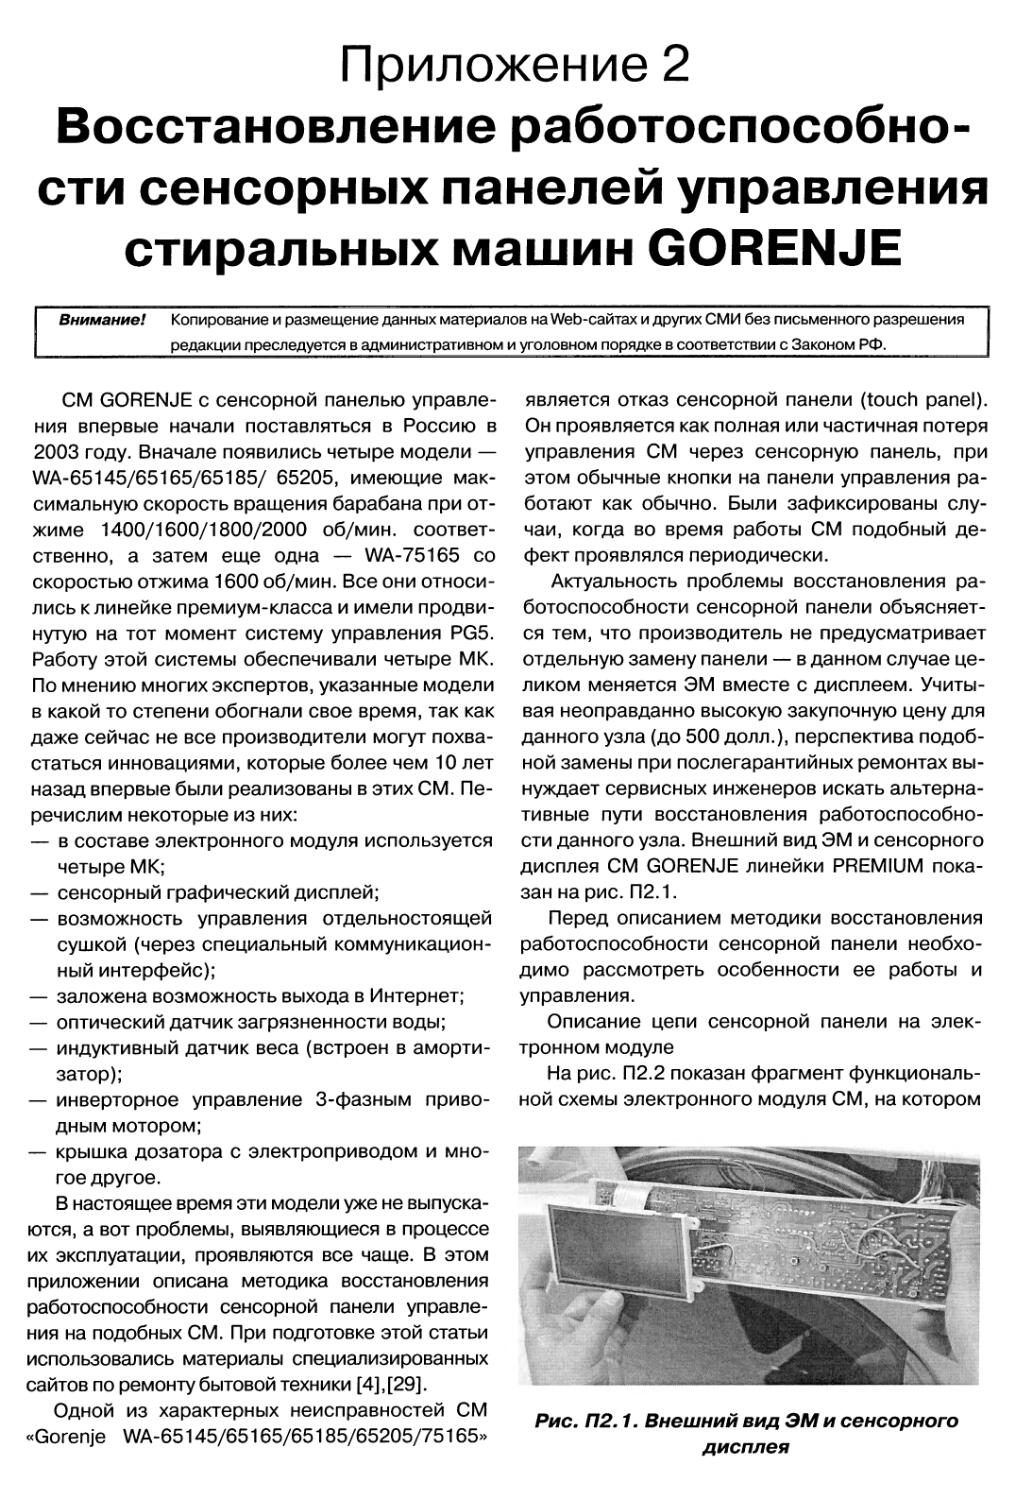 Приложение 2 Восстановление работоспособности сенсорных панелей управления стиральных машин GORENJE